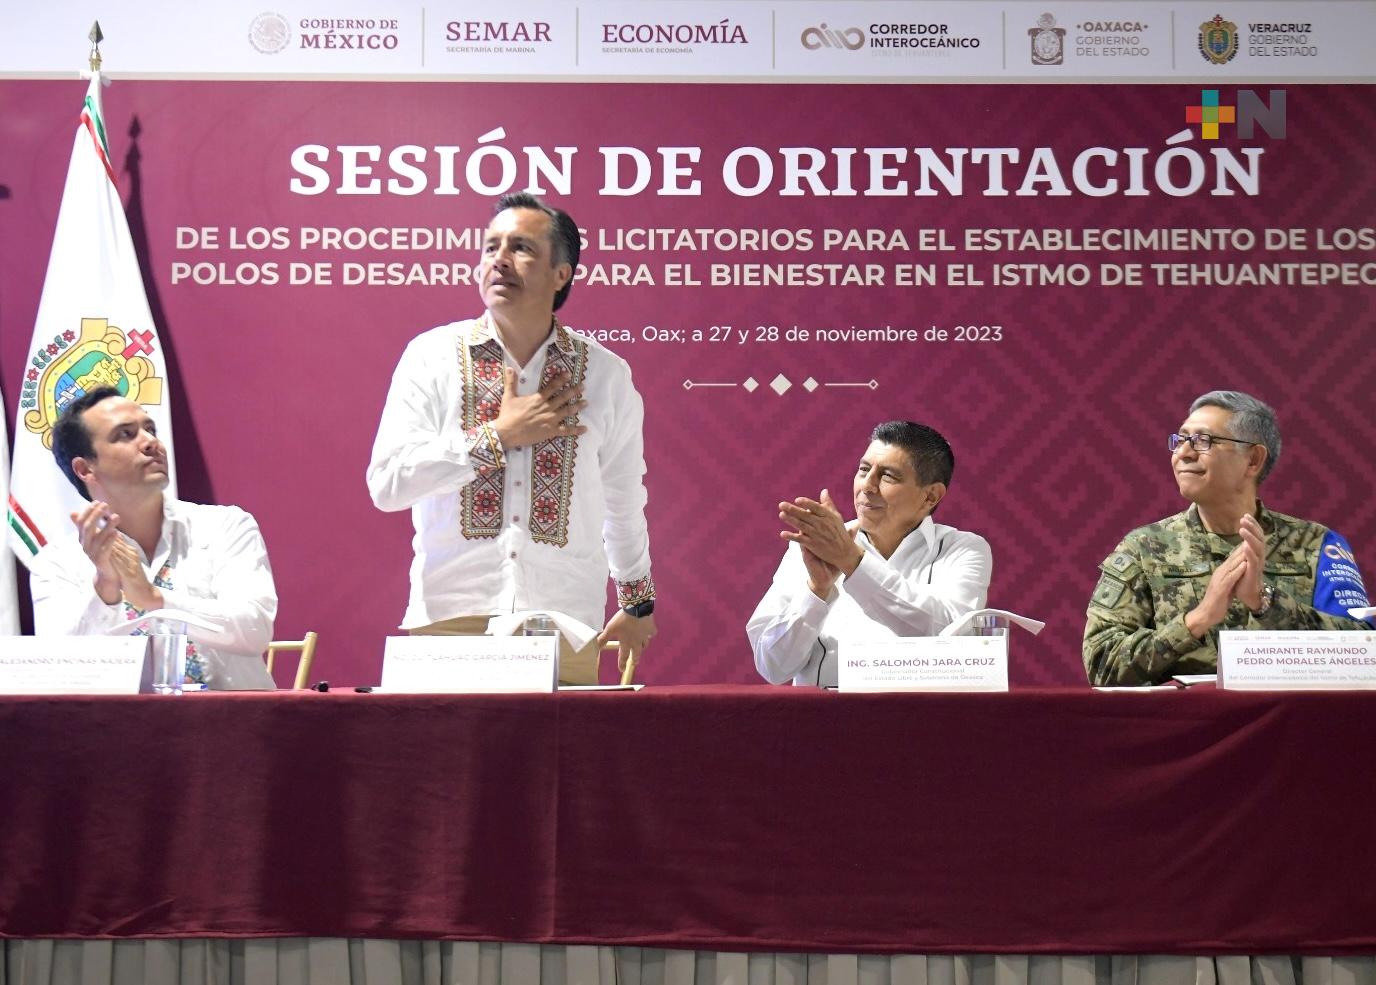 Corredor del Istmo cumple en justicia social, desarrollo y sostenibilidad: Cuitláhuac García